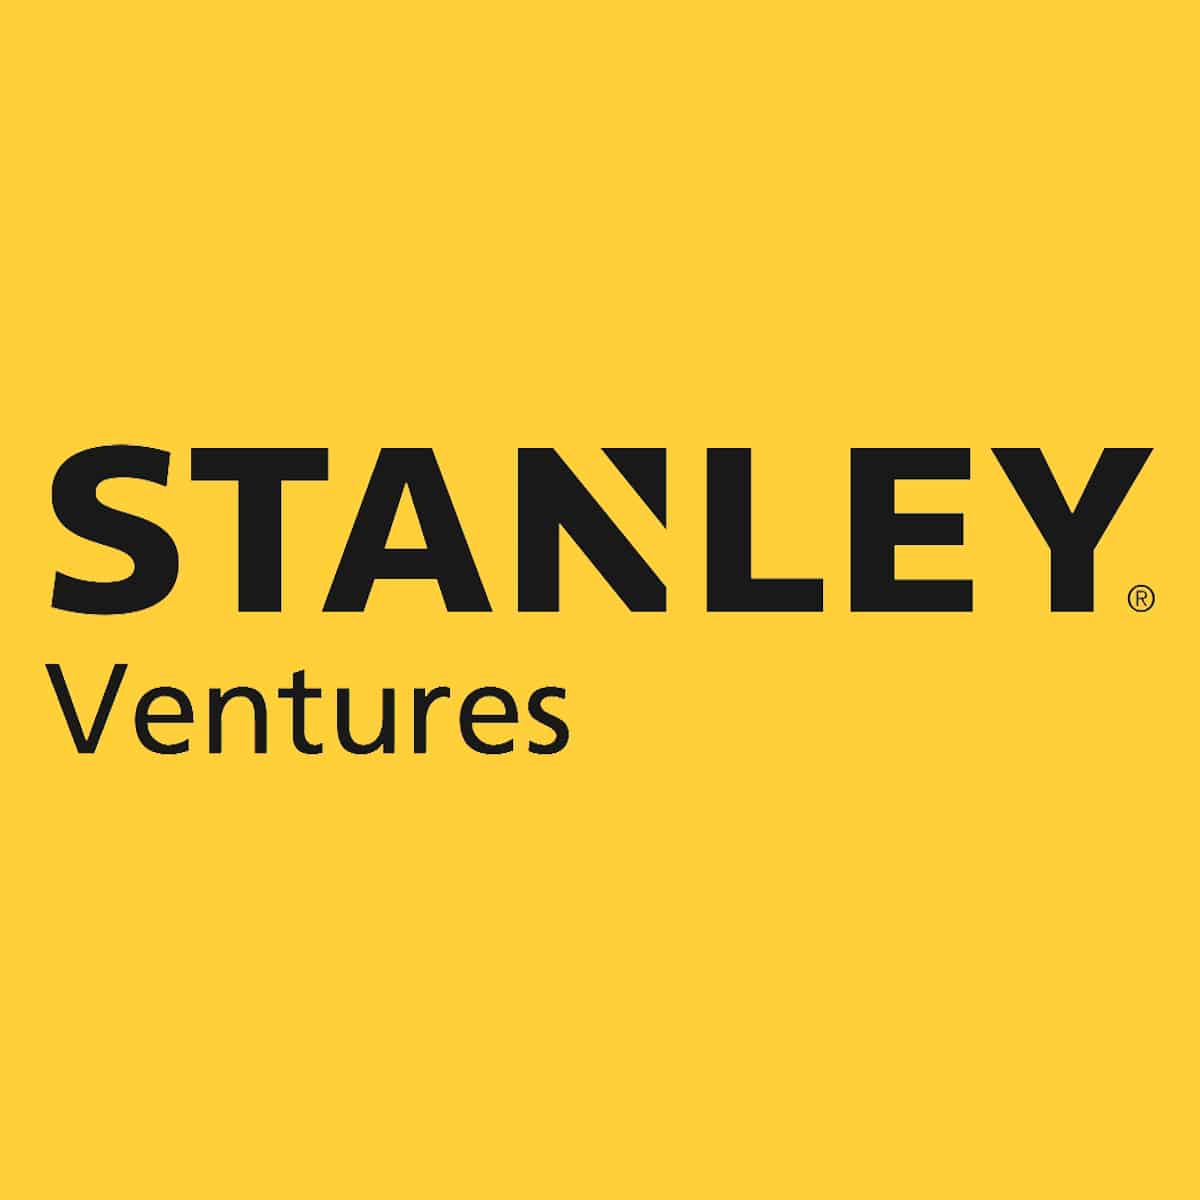 Stanley Ventures Logo